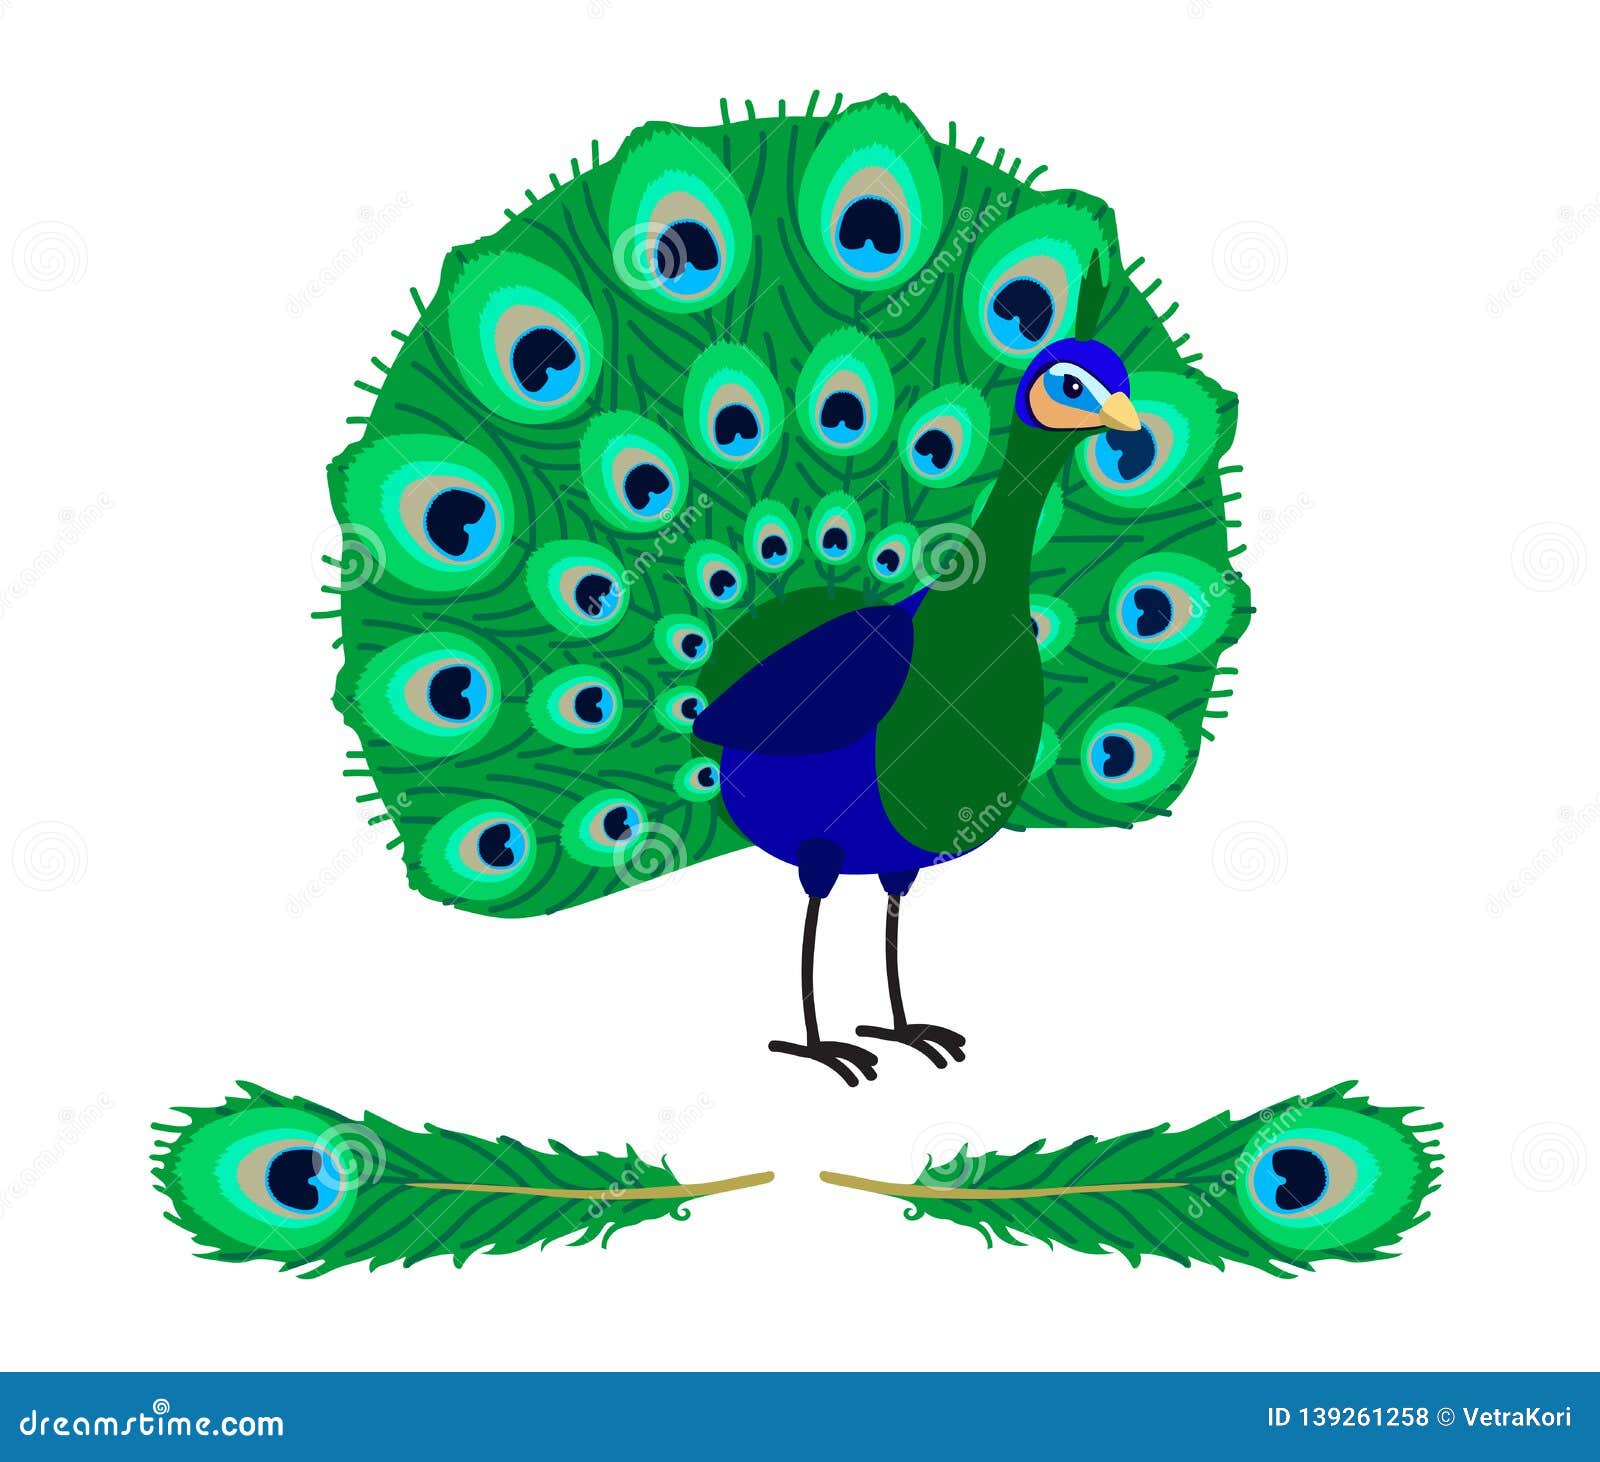 Vector Cartoon Animal Clip Art Stock Vector - Illustration of peacock ...